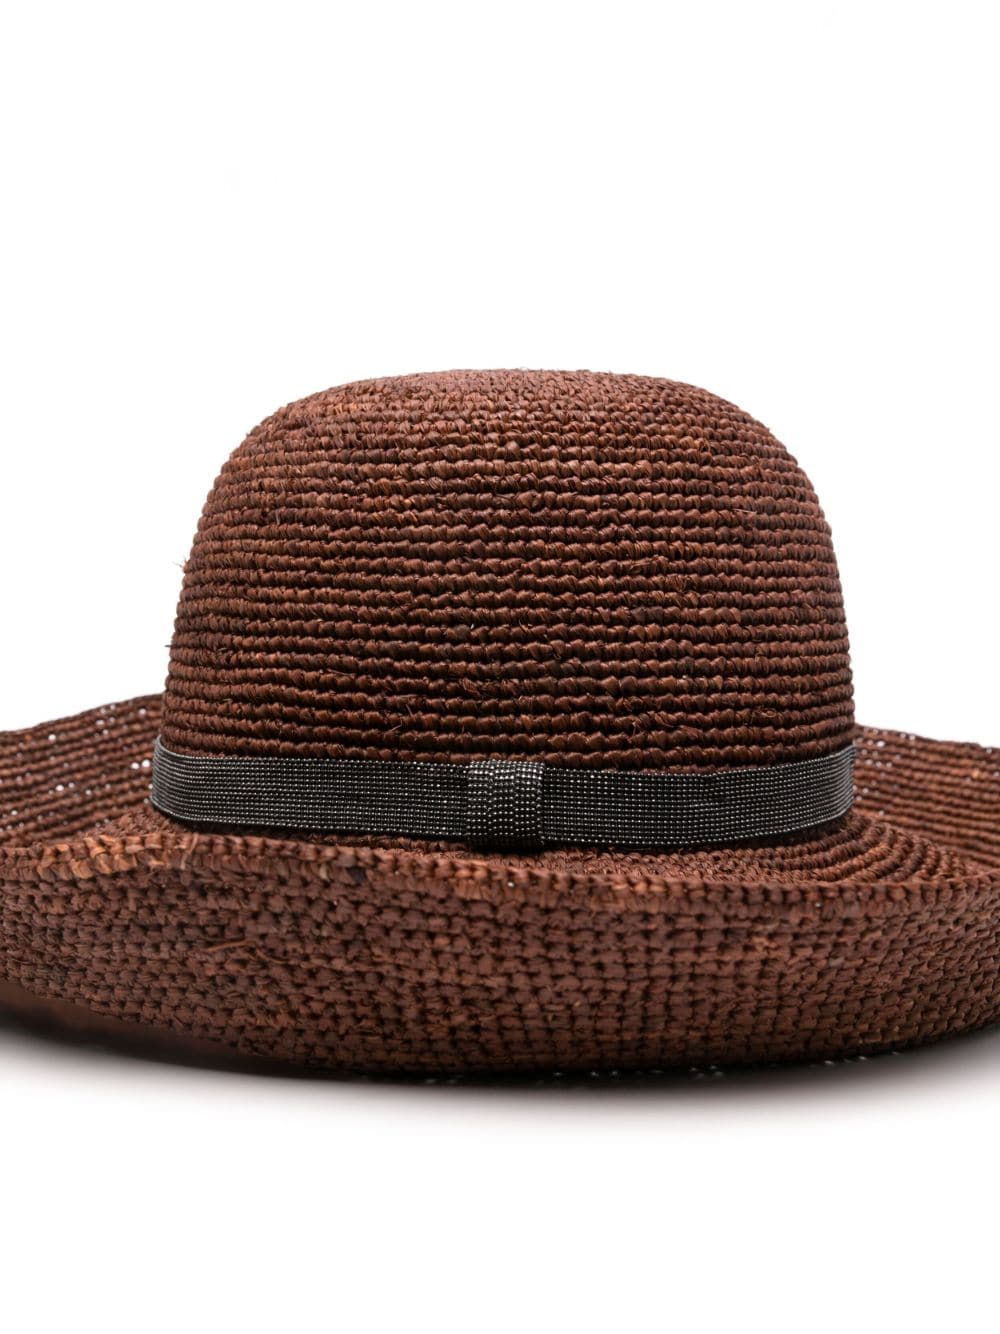 Brunello Cucinelli Hats Brown